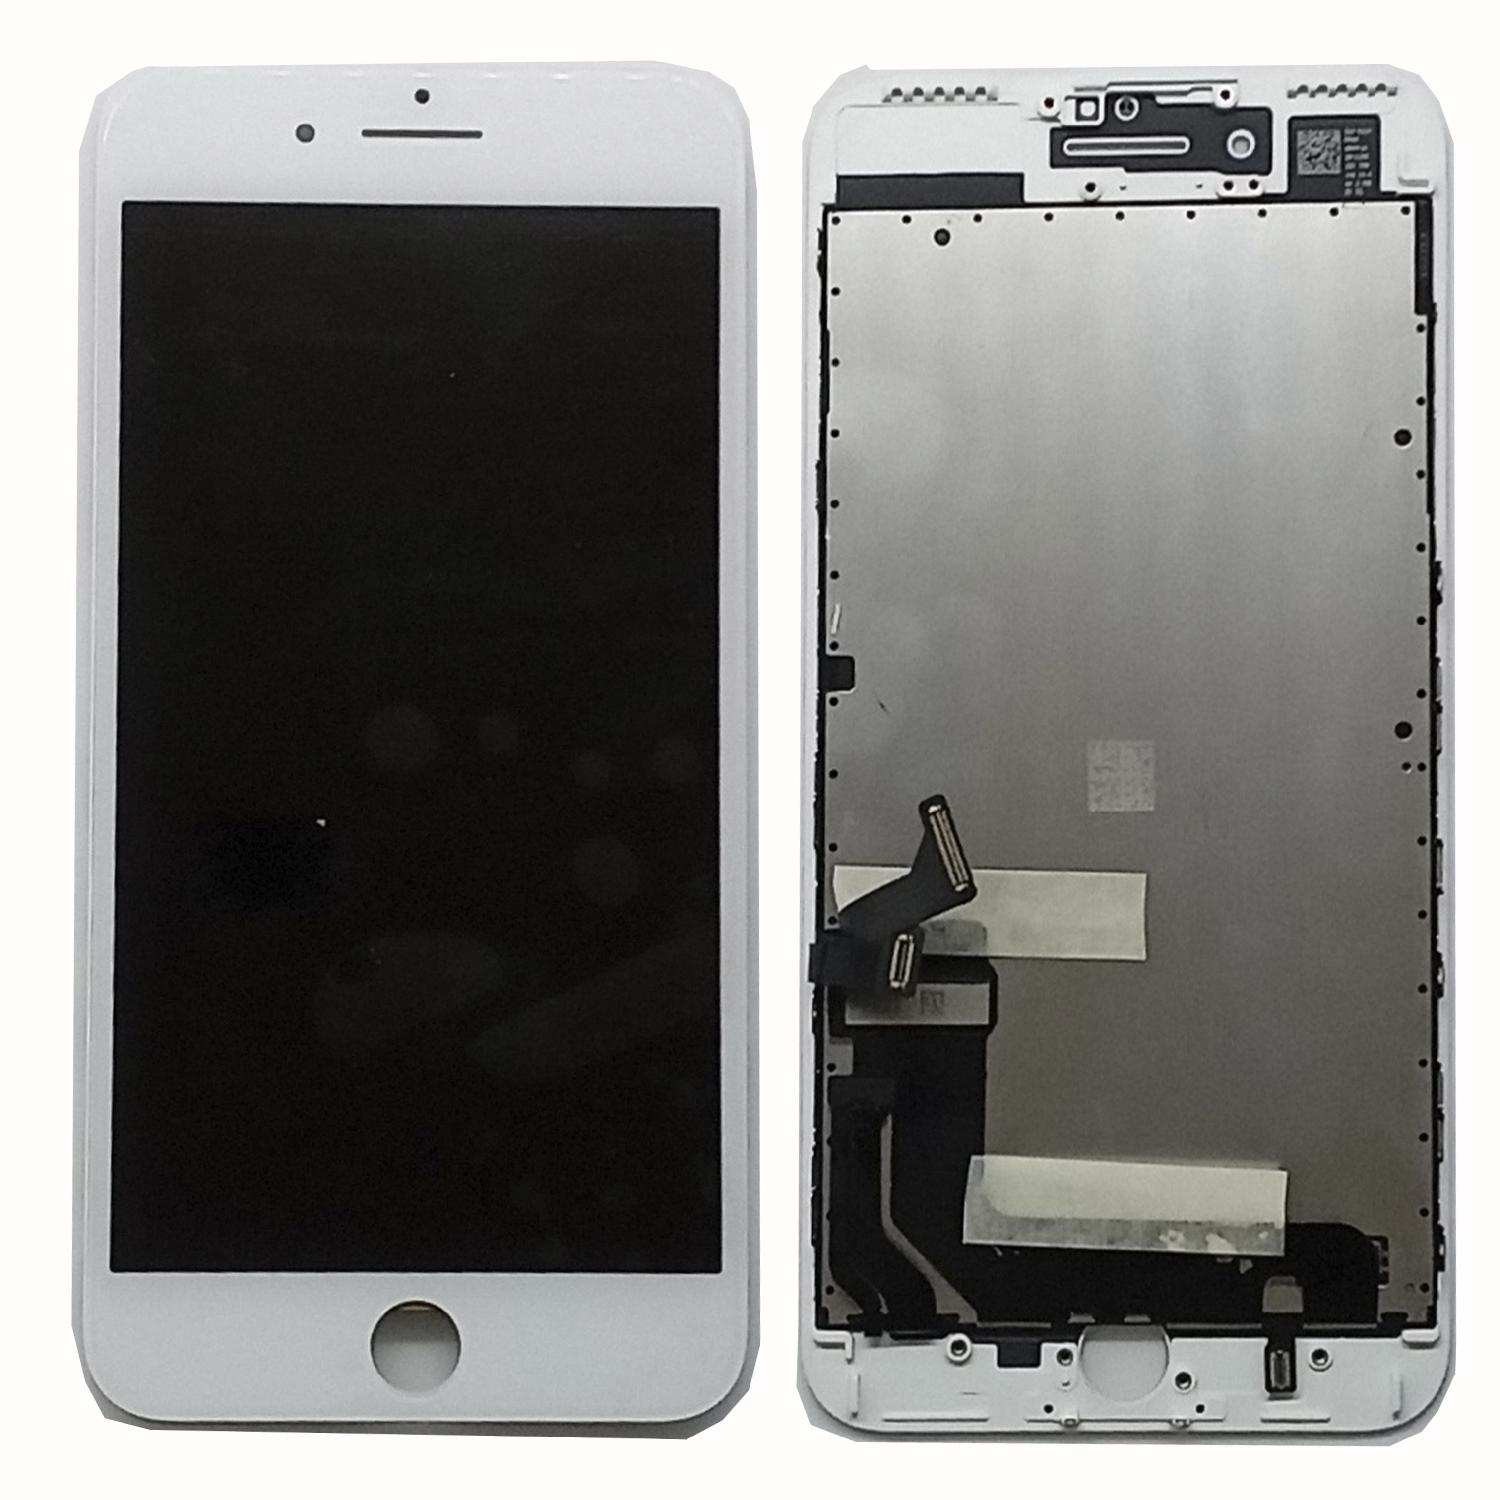 Модуль телефона iPhone 7 Plus (5.5) DTP (дисплей + тачскрин) белый (Оригинал/Замененное стекло)